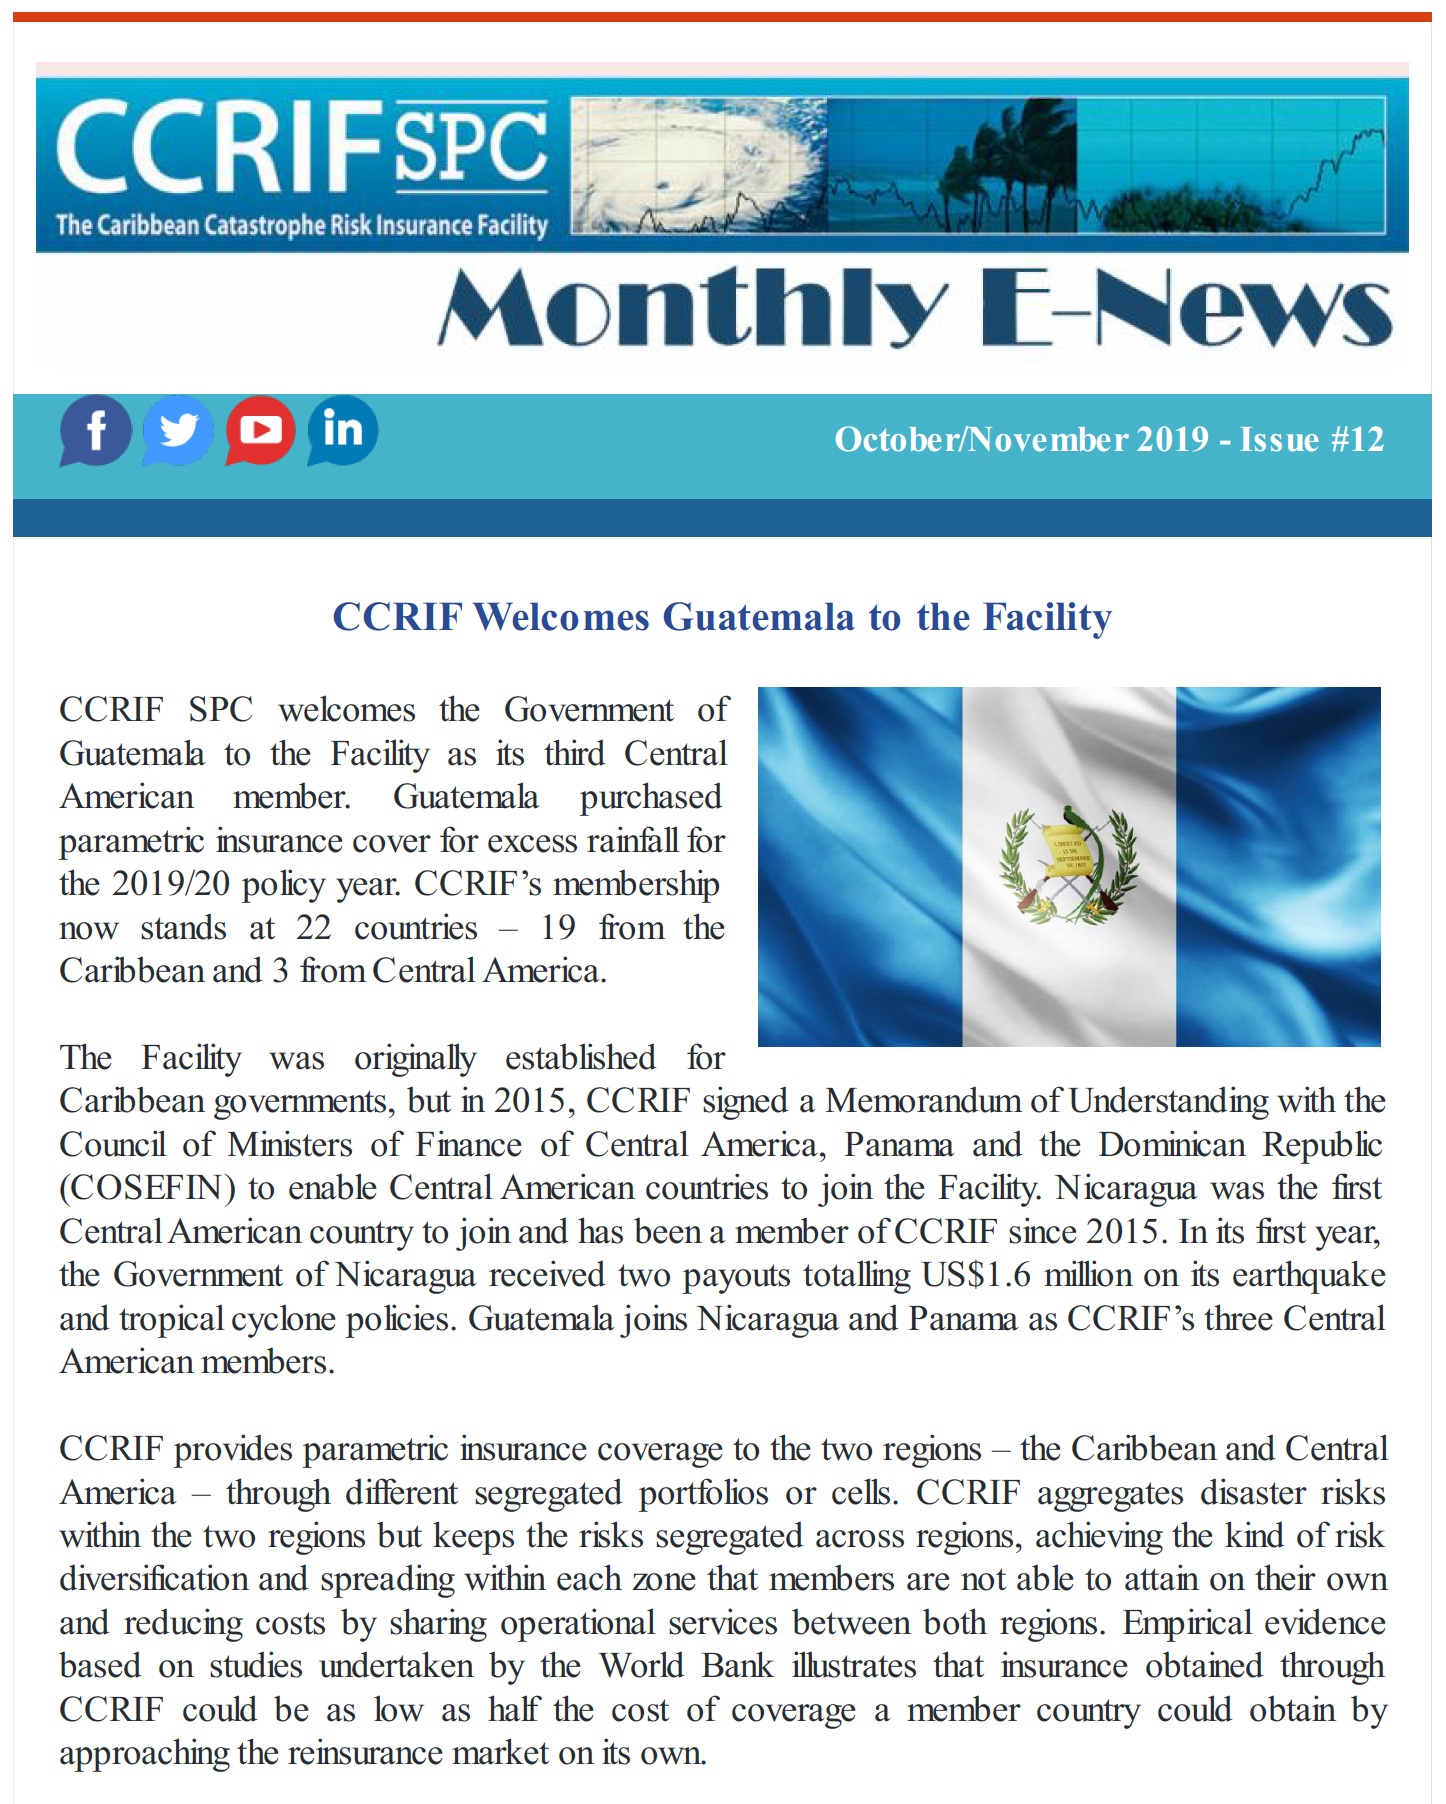 CCRIF SPC - E-News - October/November 2019